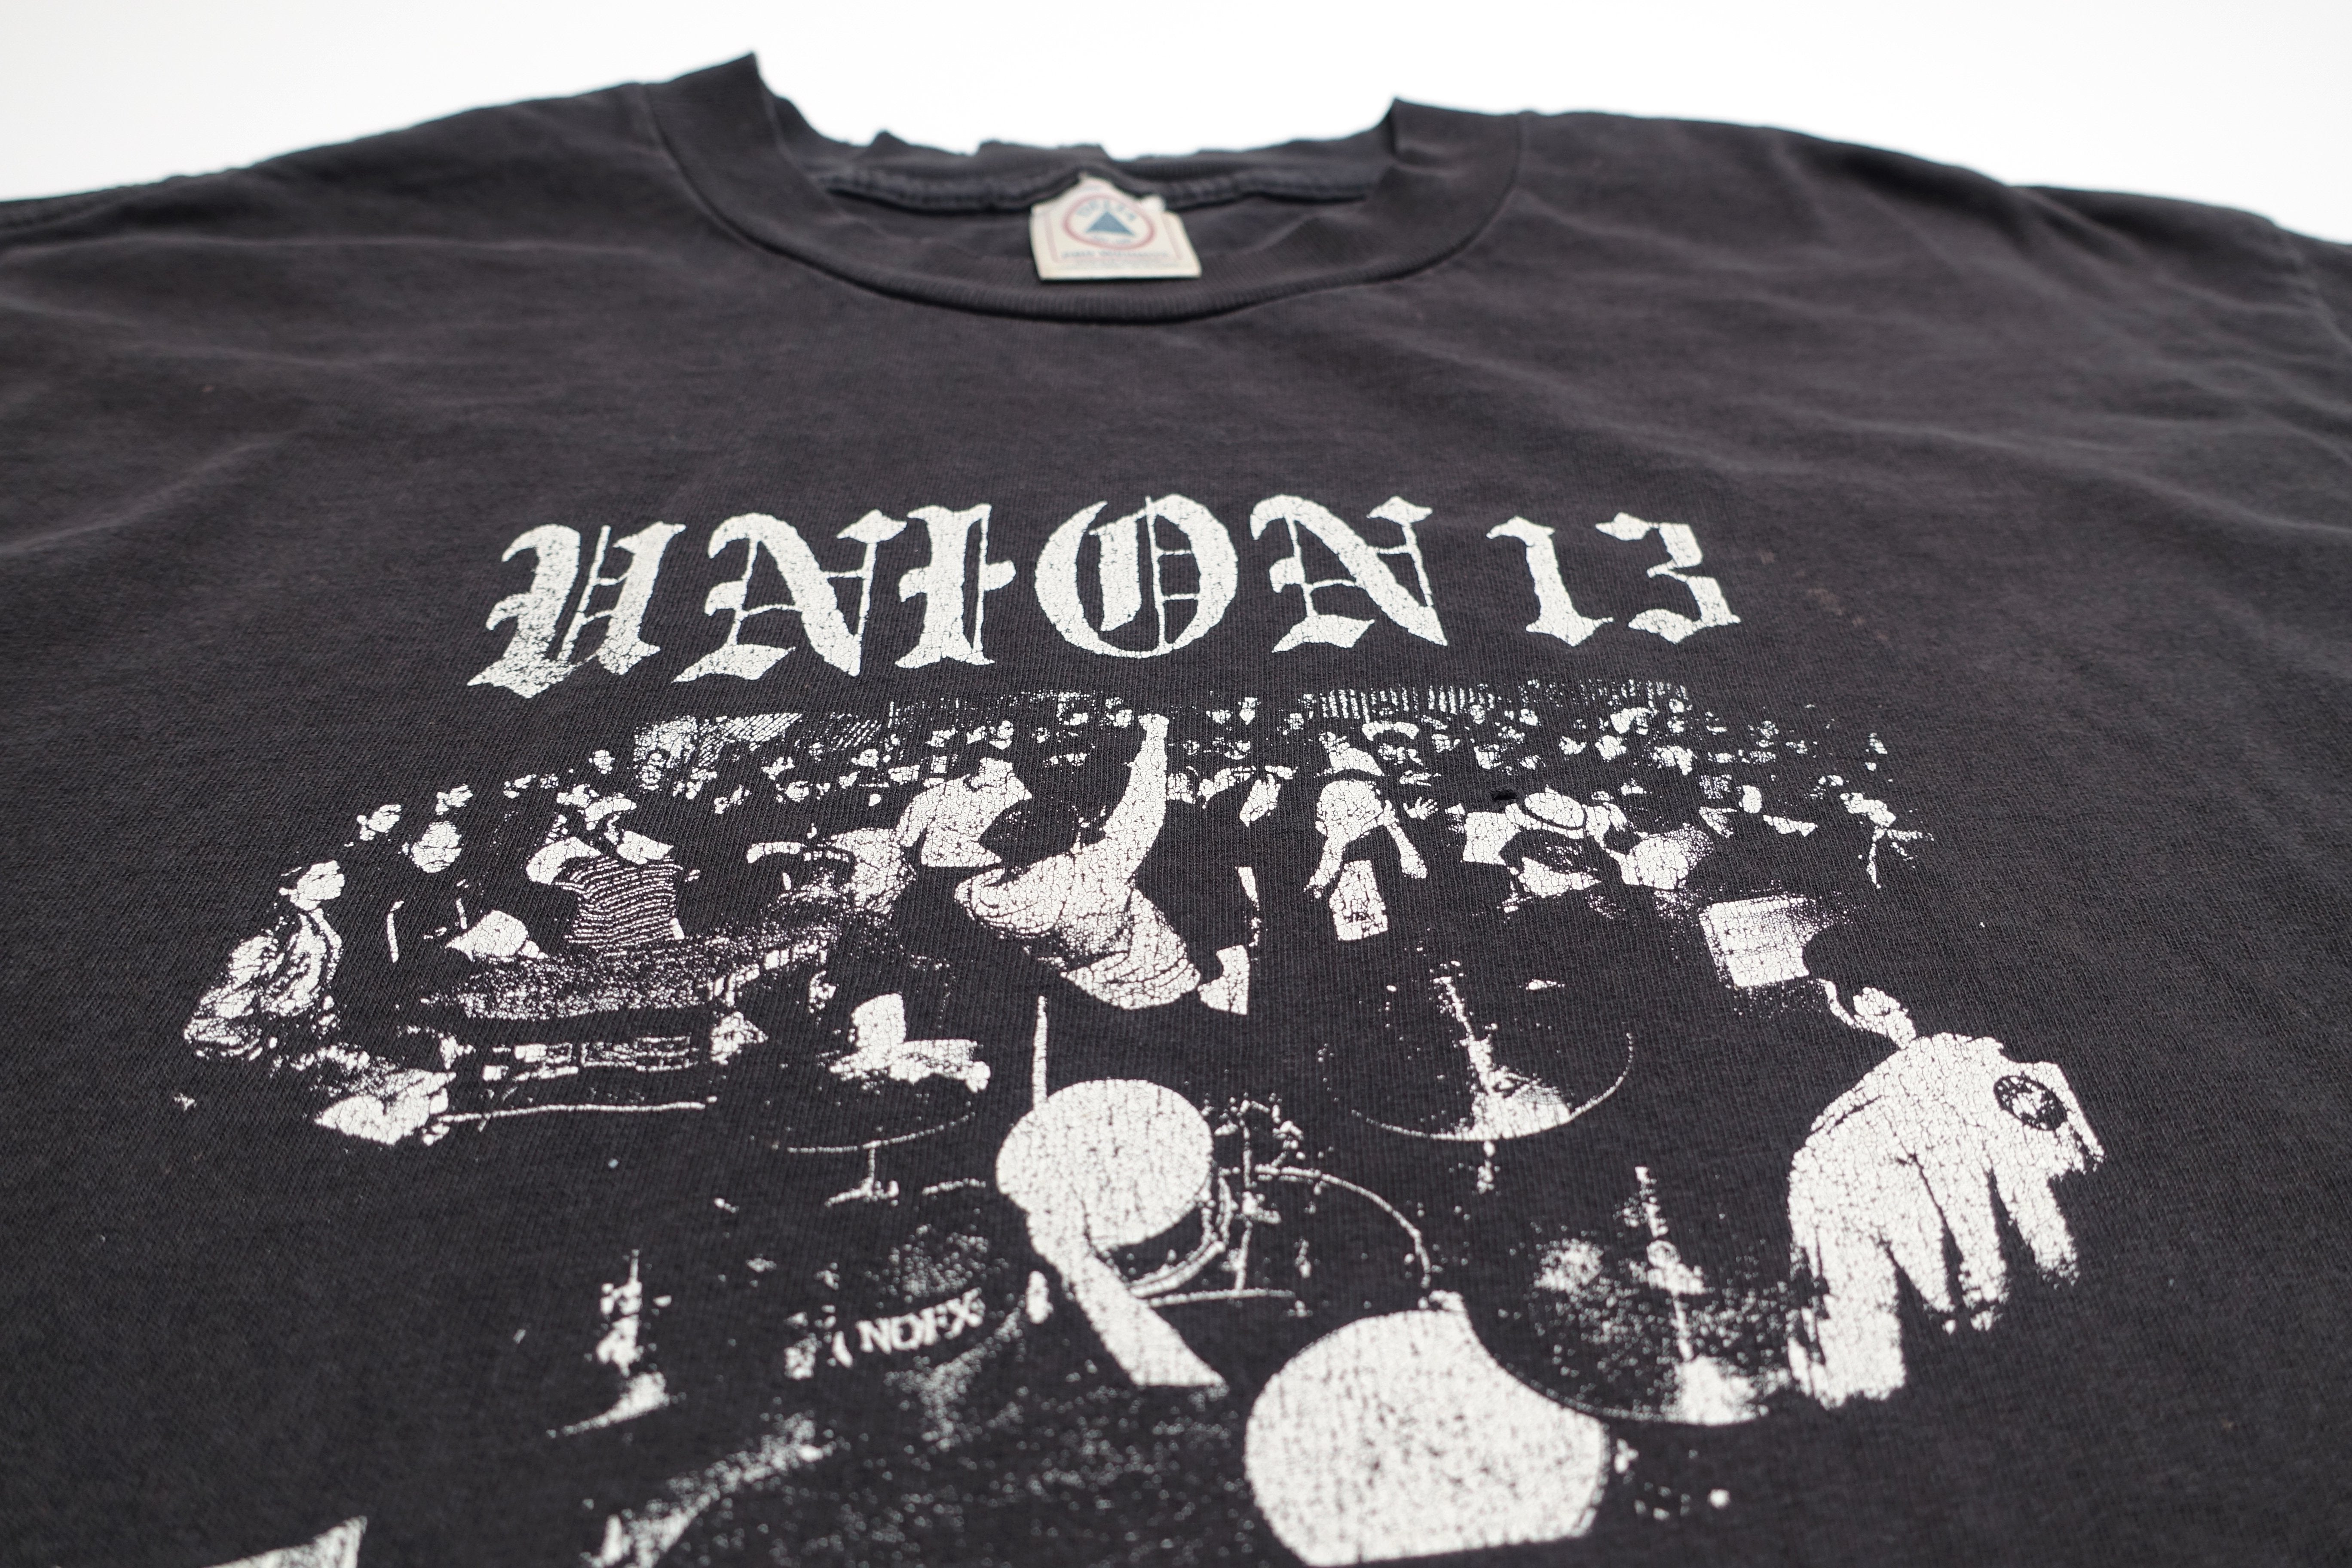 Union 13 - East Los Presents... 1997 Tour Shirt Size XL